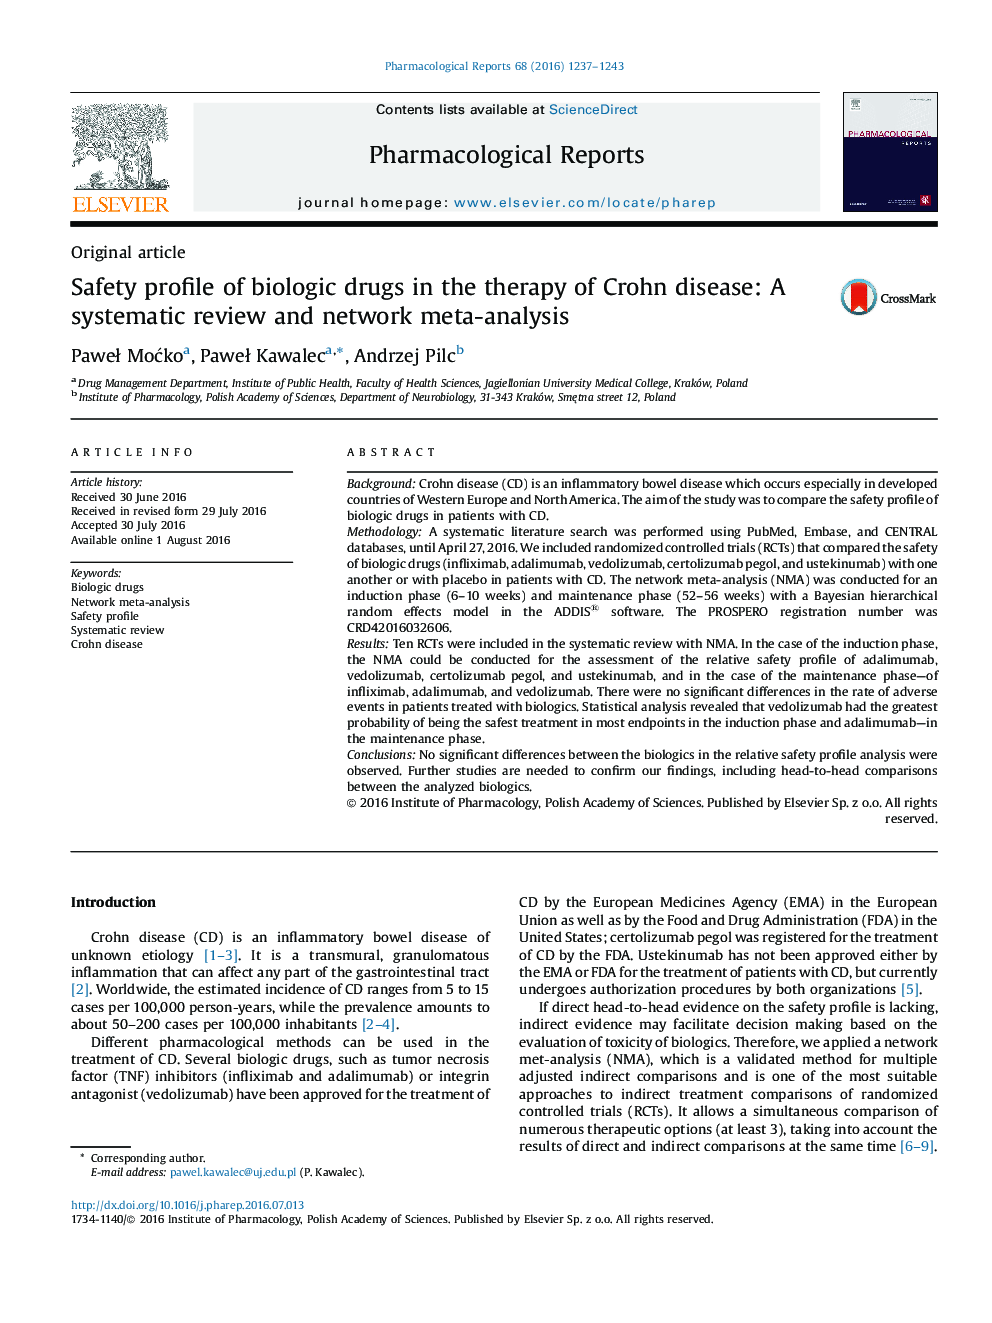 مشخصات ایمنی داروهای بیولوژیک در درمان بیماری کرون: یک بررسی سیستماتیک و متا آنالیز شبکه 